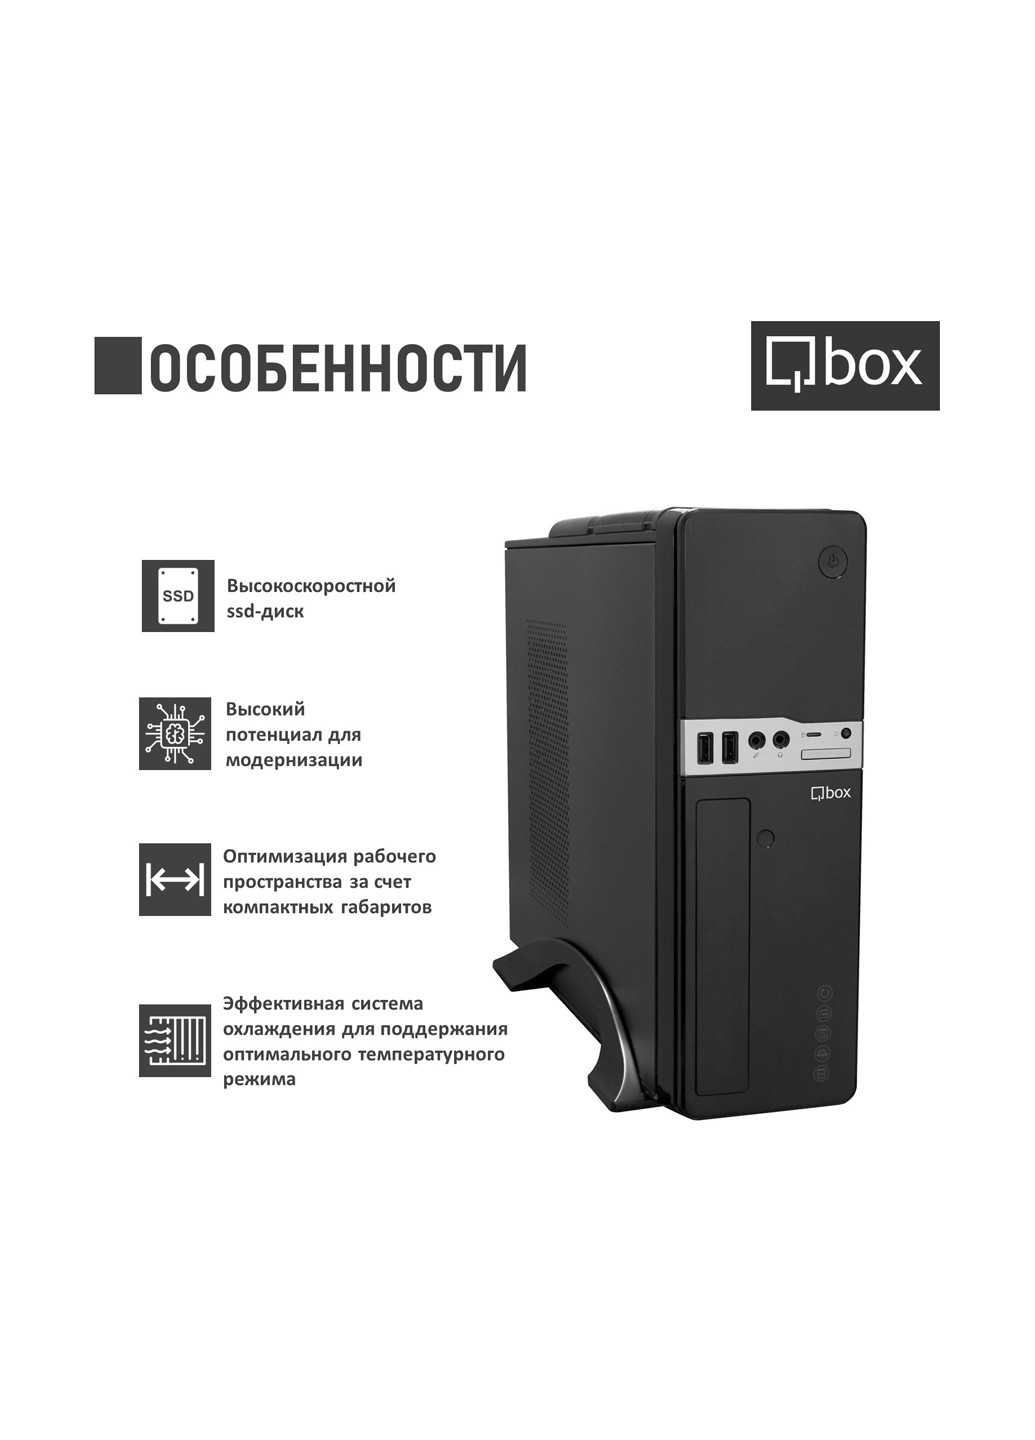 Компьютер I2684 Qbox qbox i2684 (131396728)